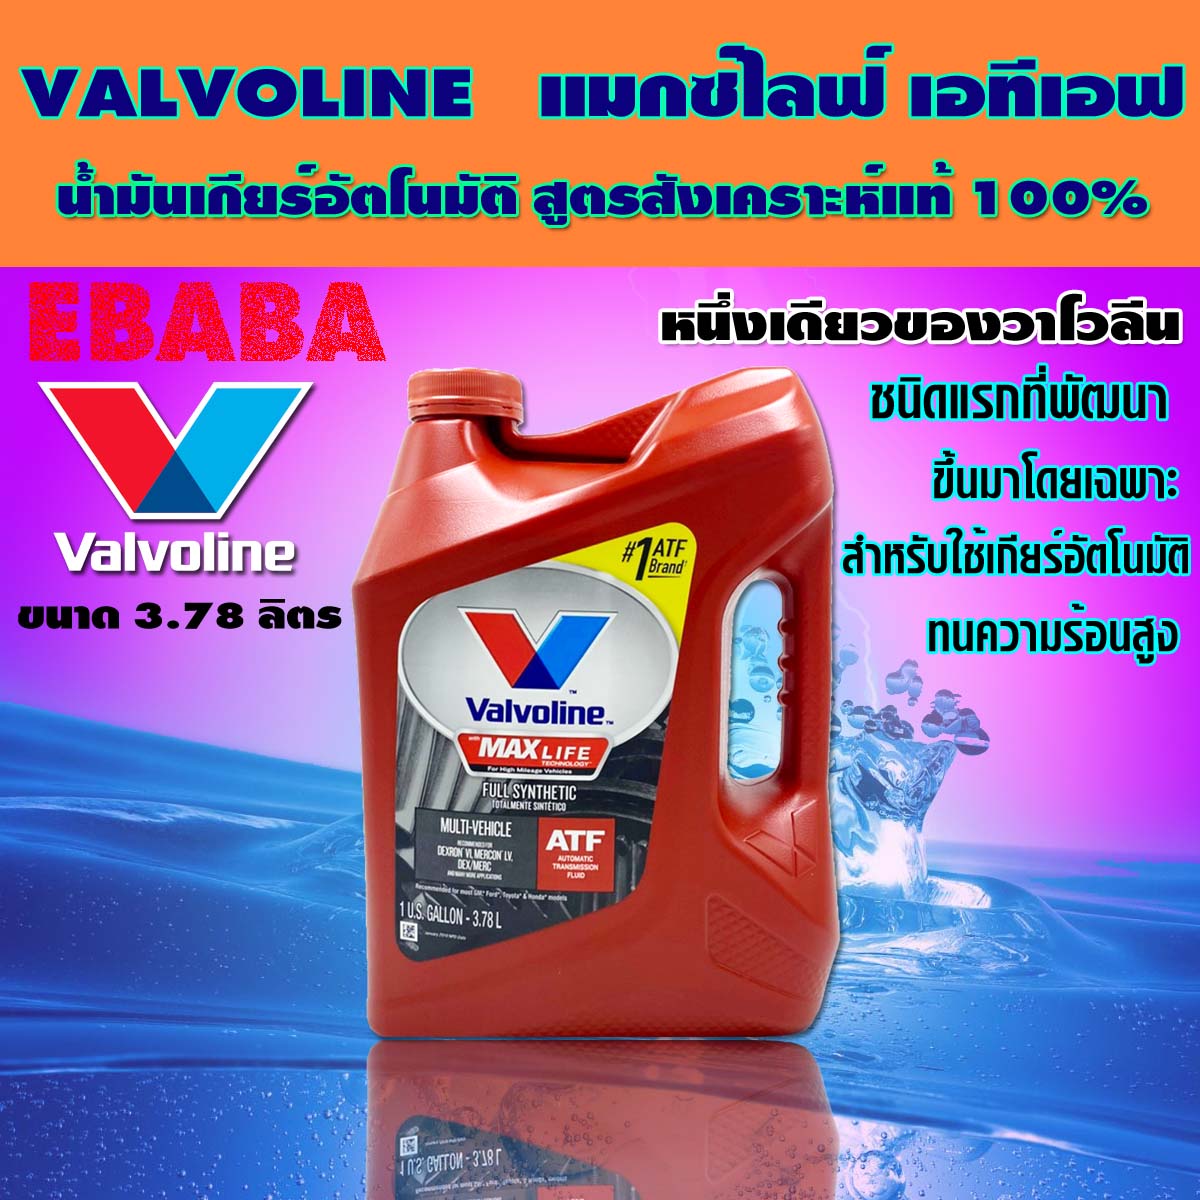 น้ำมันเกียร์อัตโนมัติ สังเคราะห์แท้ 100%  Valvoline  MAXLIFE  ATF (แมกซ์ไลฟ์ เอทีเอฟ) 3.78 ลิตร